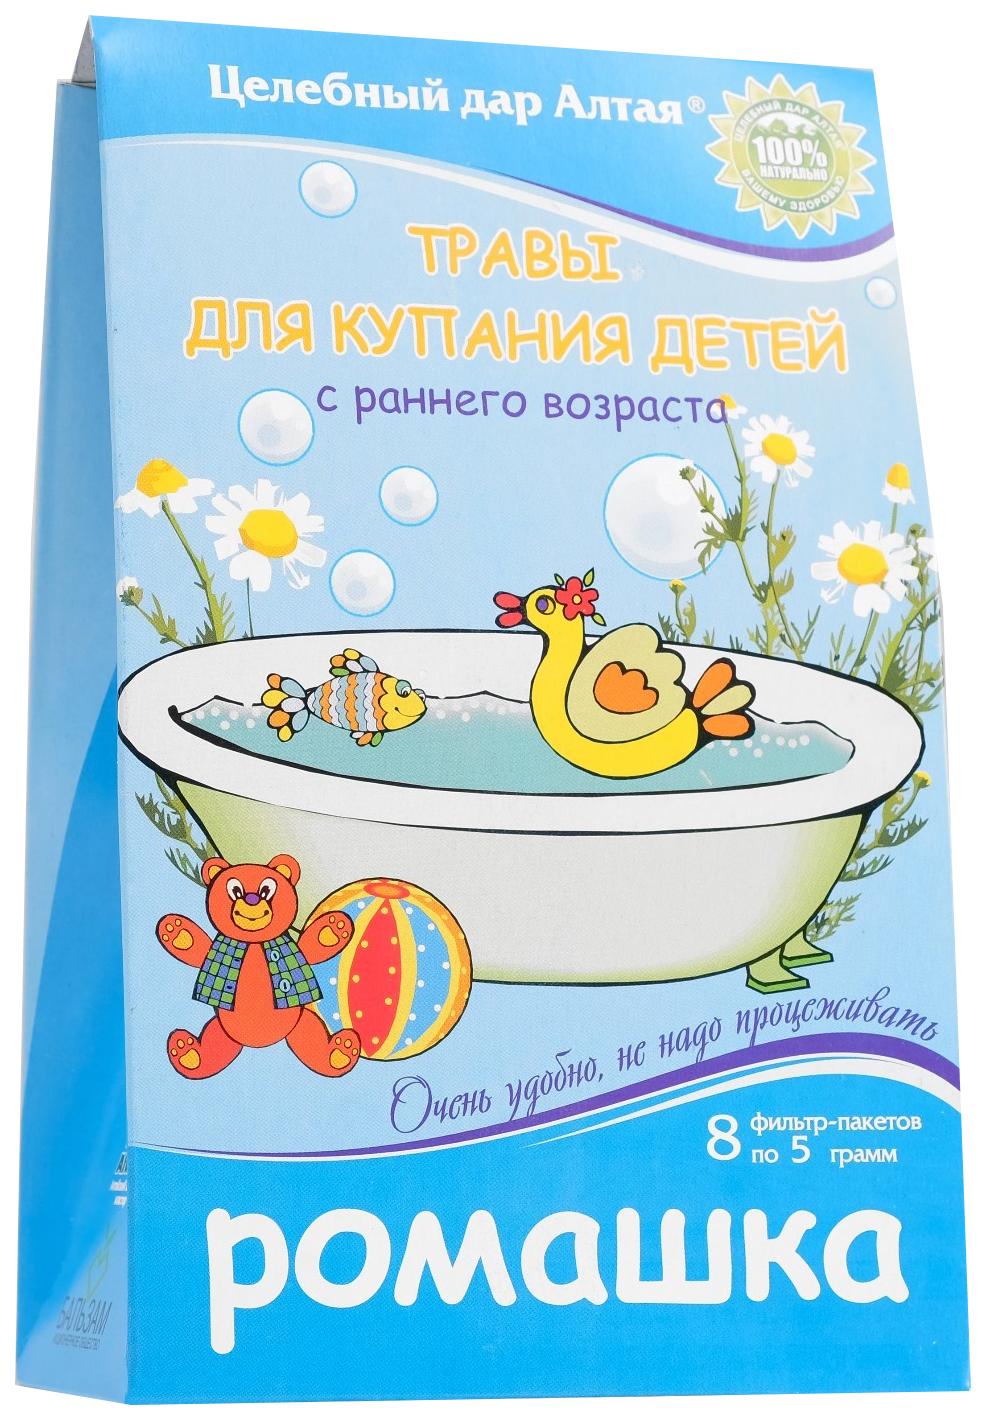 Травы для купания детей Целебный дар Алтая, ромашка, 8 фильтр-пакетов по 5 г